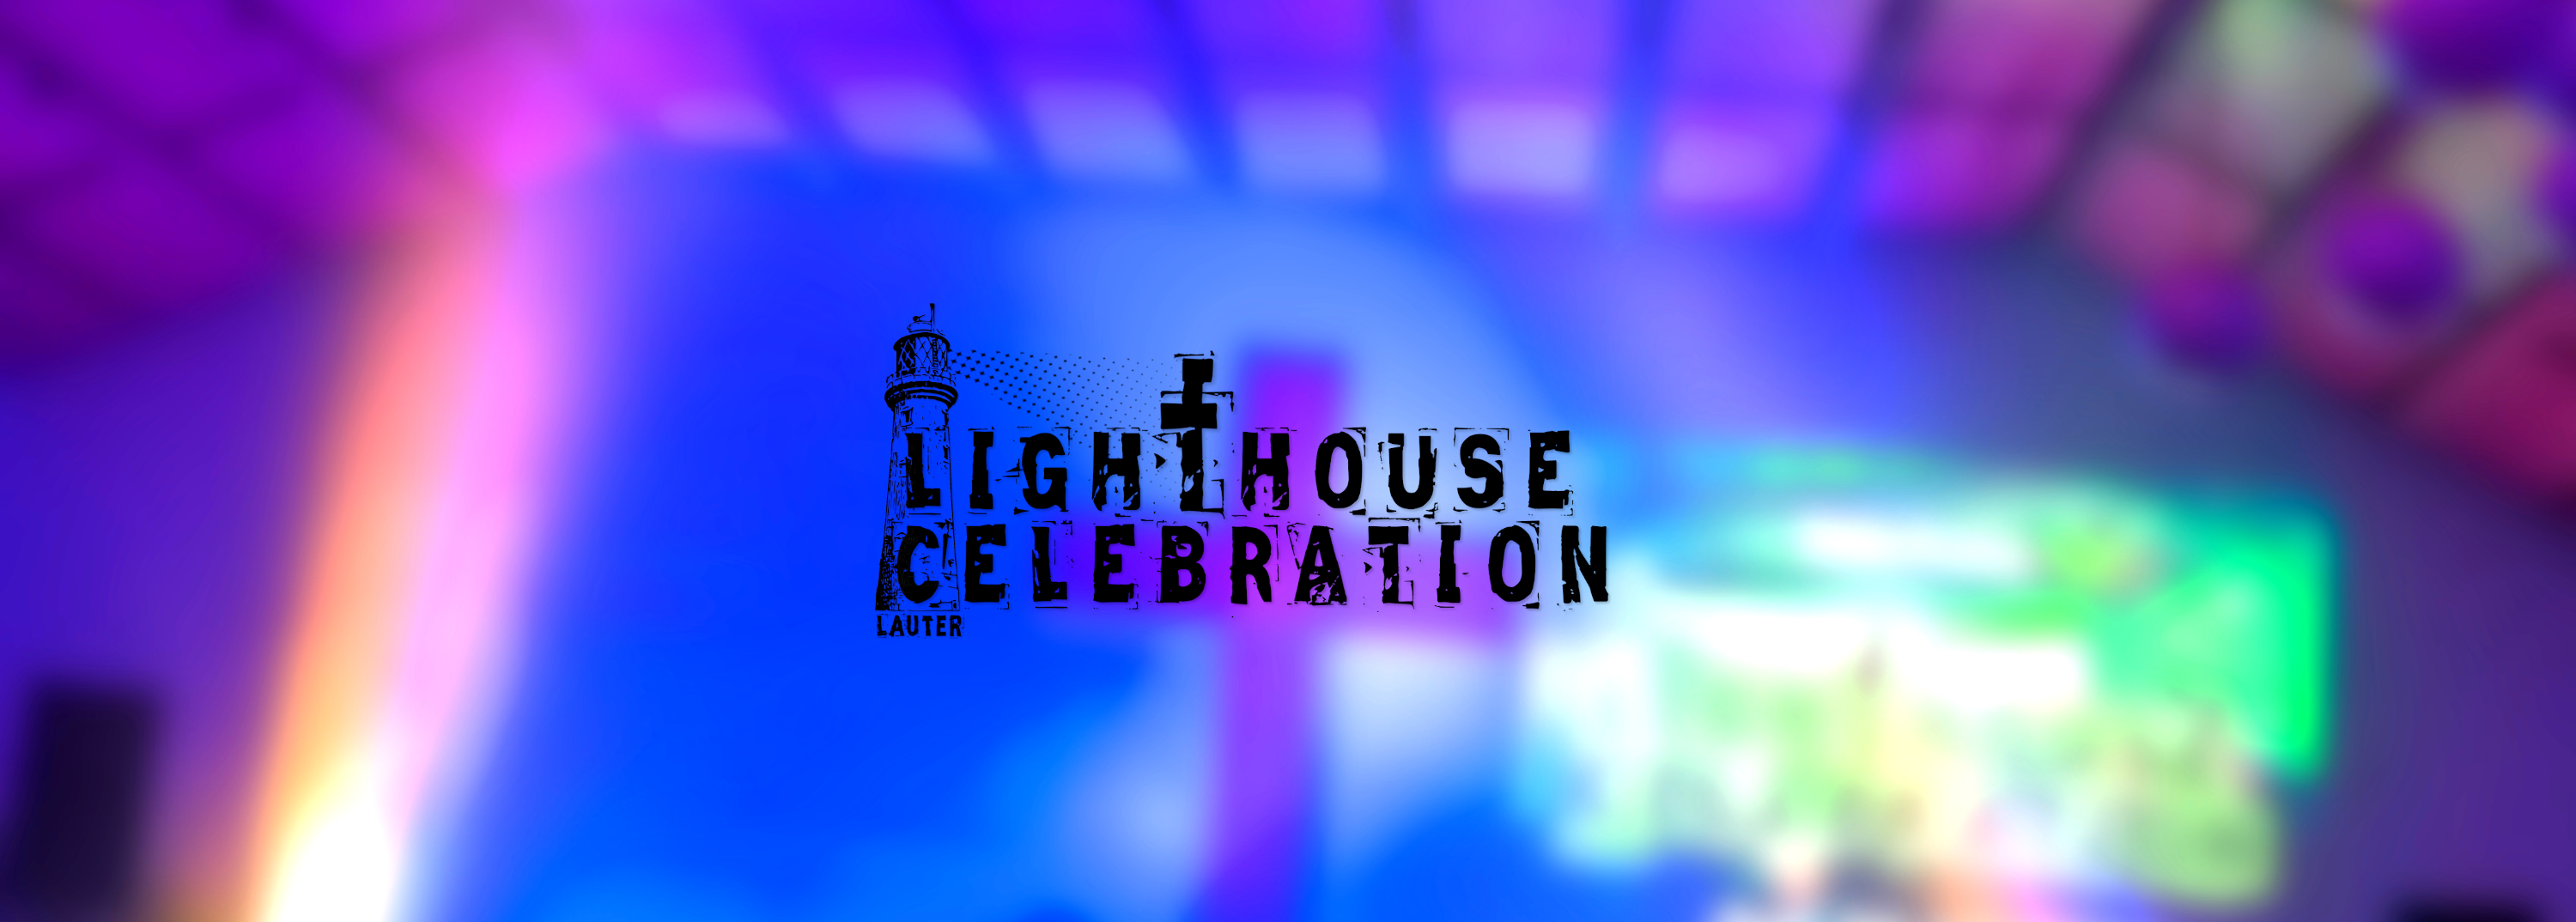 Lighthouse Celebration